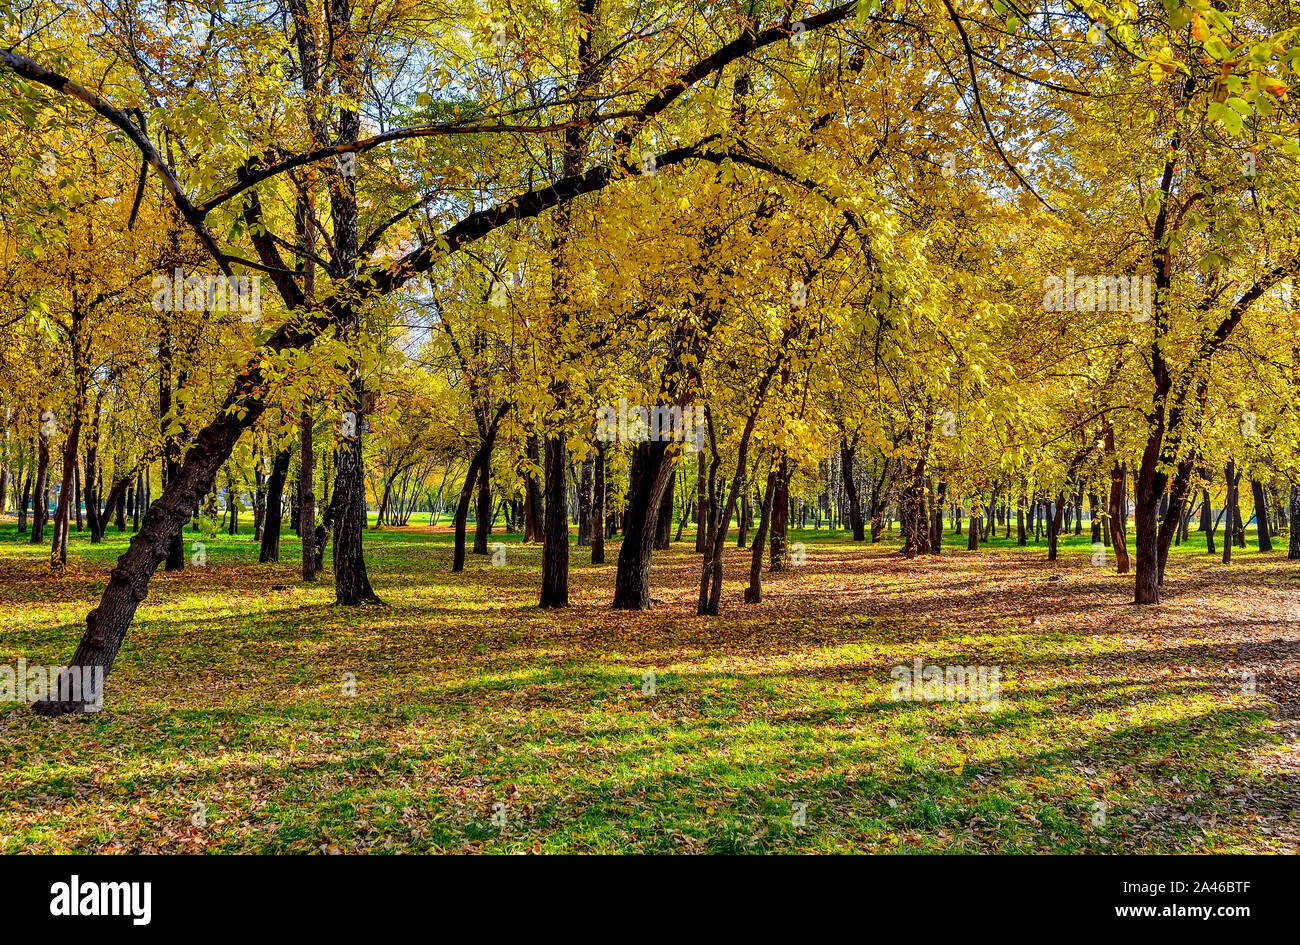 Oktober im City Park - farbenfrohe Herbst Landschaft mit bunten Herbstlaub an warmen und sonnigen Wetter. Schönheit der herbstlichen Natur Konzept Stockfoto